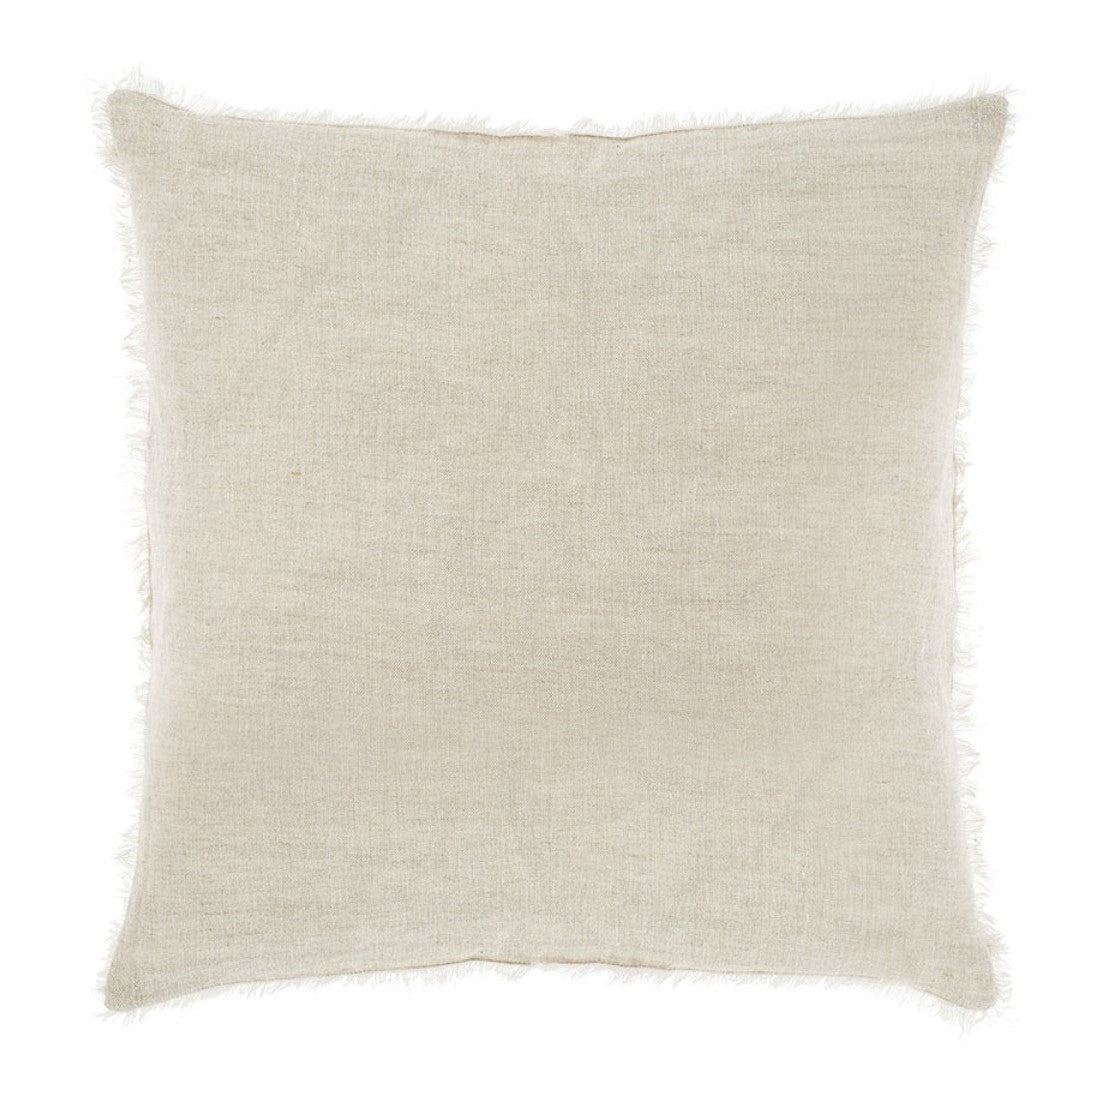 Chambray Linen Pillow: 24" x 24" SKU 1-5593-C